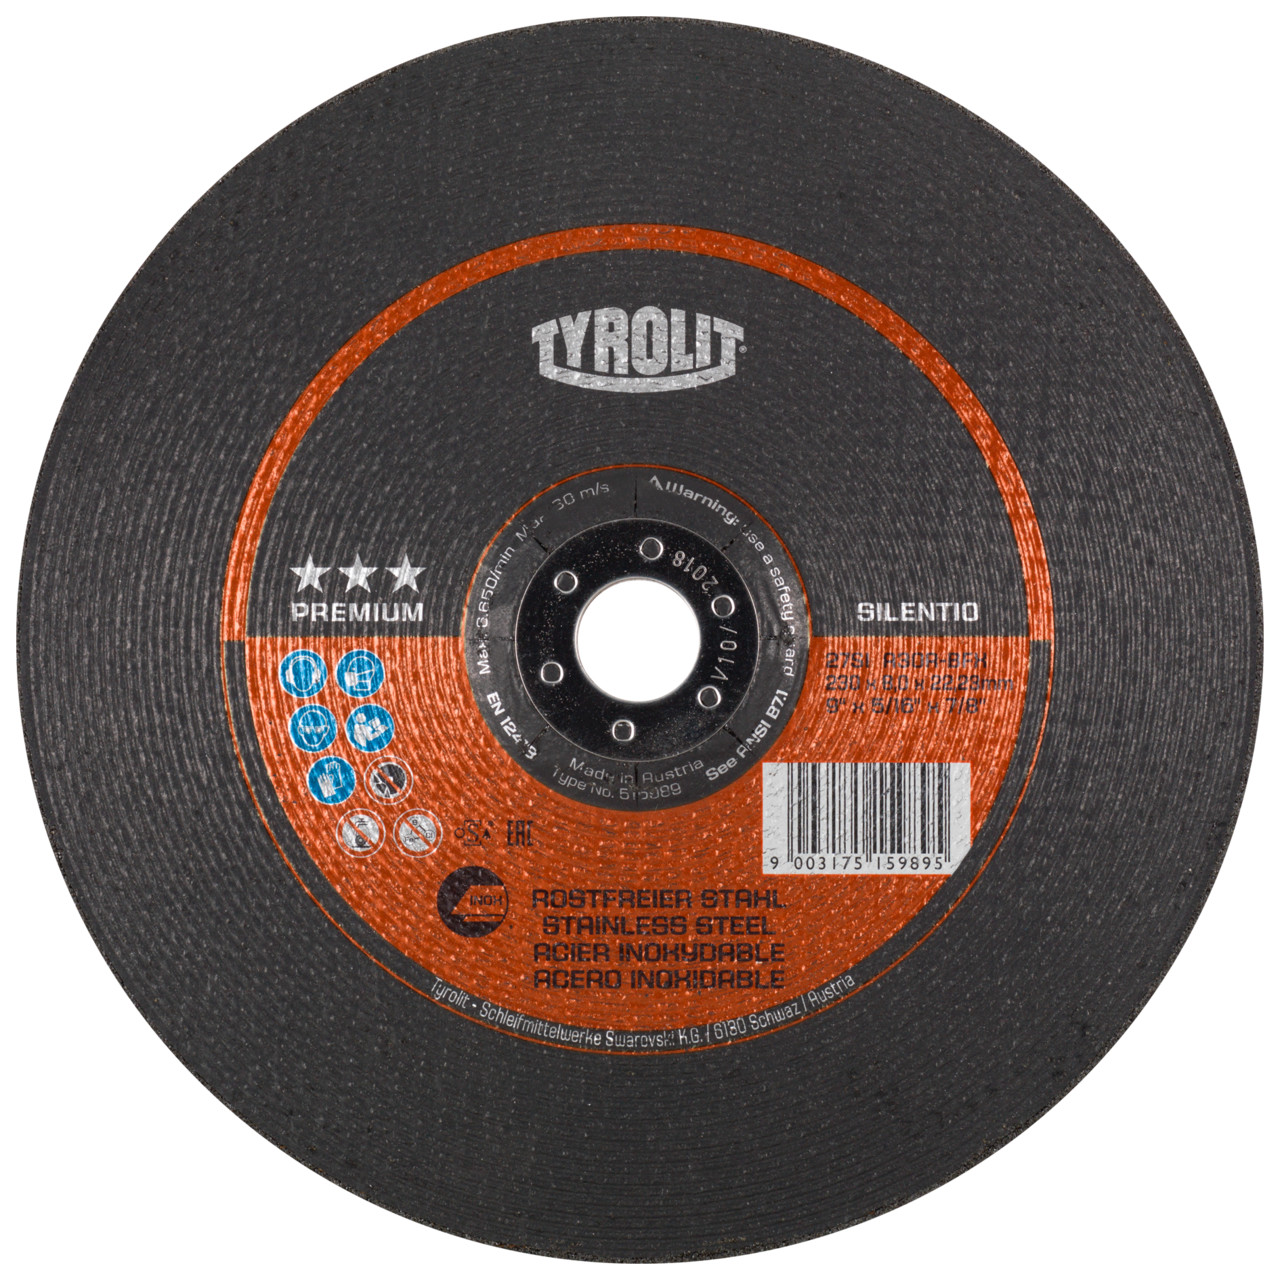 TYROLIT disco de desbaste DxUxH 178x7x22.23 Silentio para acero inoxidable, forma: 27 - versión offset, Art. 515988